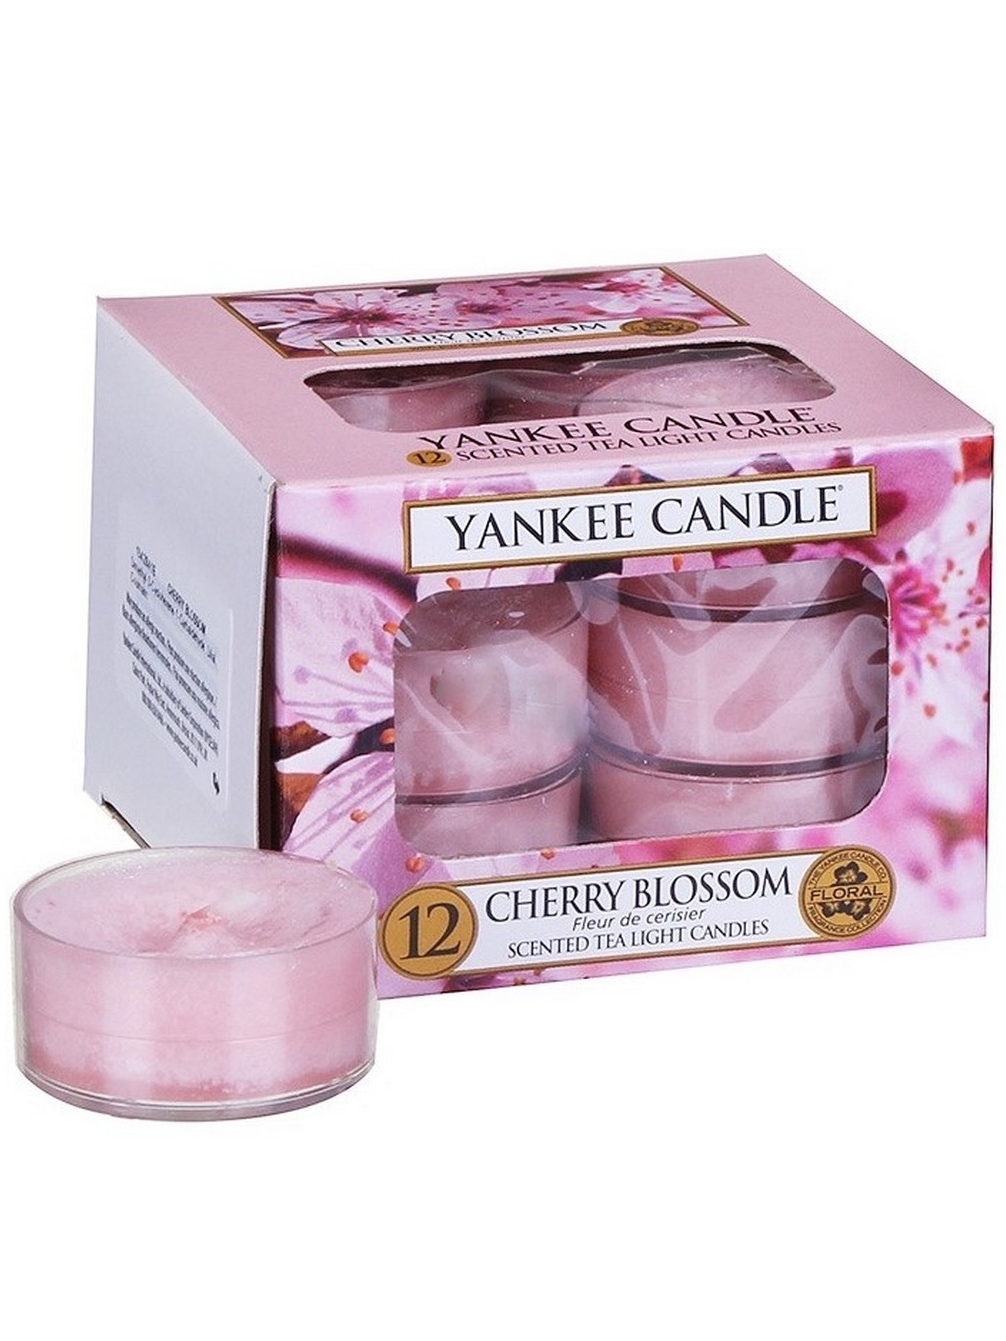 Bartek Candles свечи Cherry Blossom купить. Cherry candle